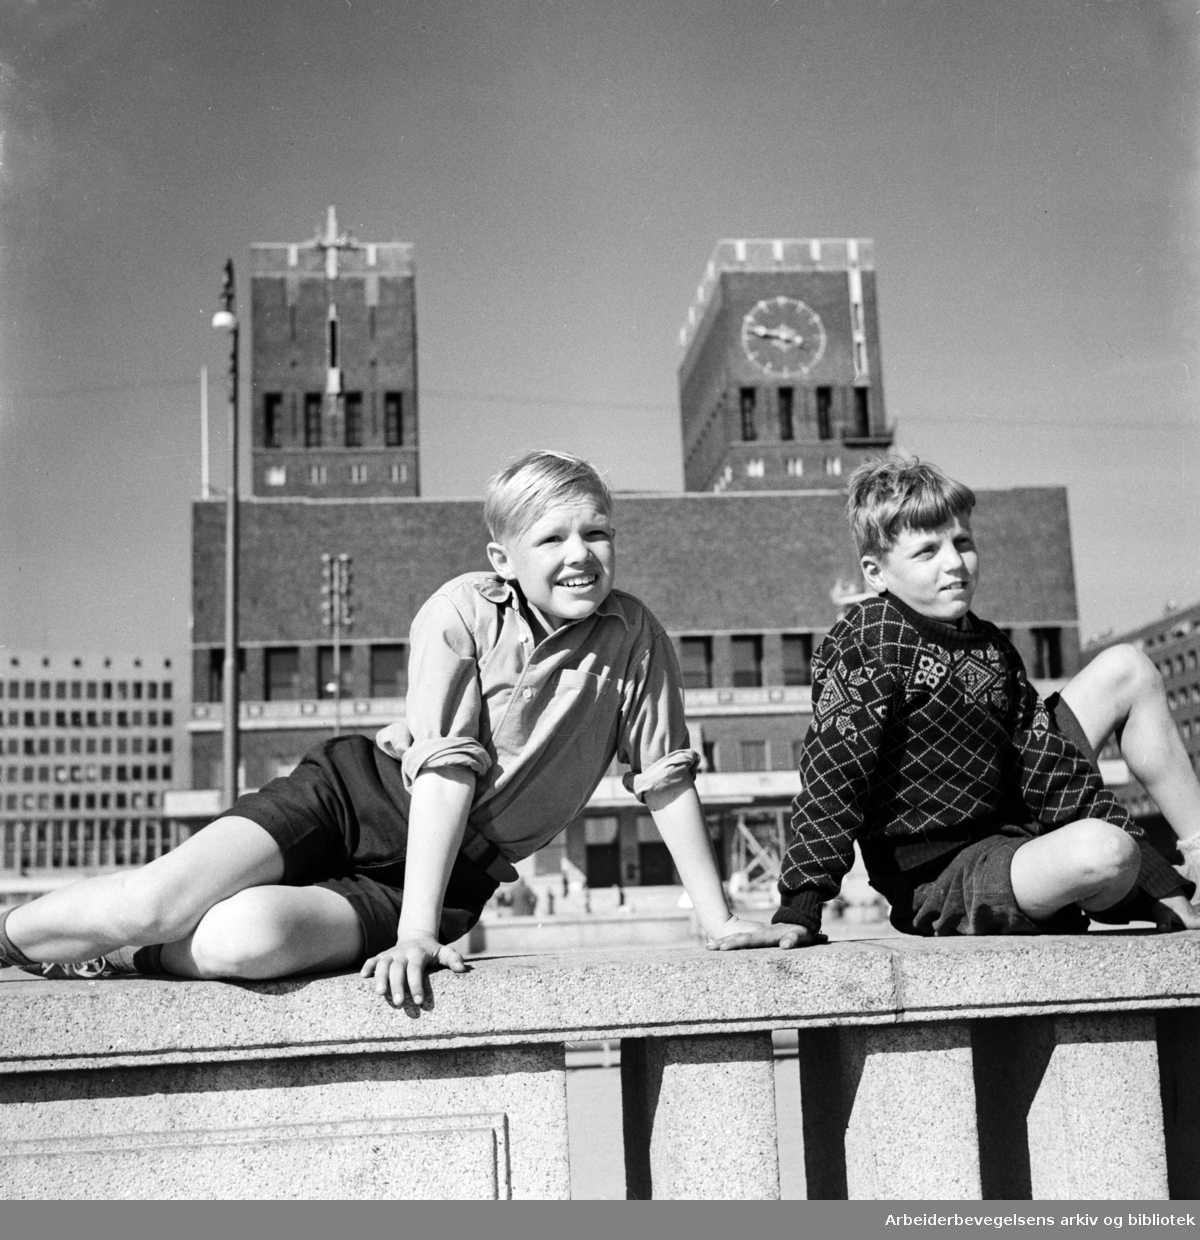 Oslo Rådhus. Illustrasjonsfoto til et oppslag om byjubileet i 1950. To gutter (ukjente). Mai 1950.